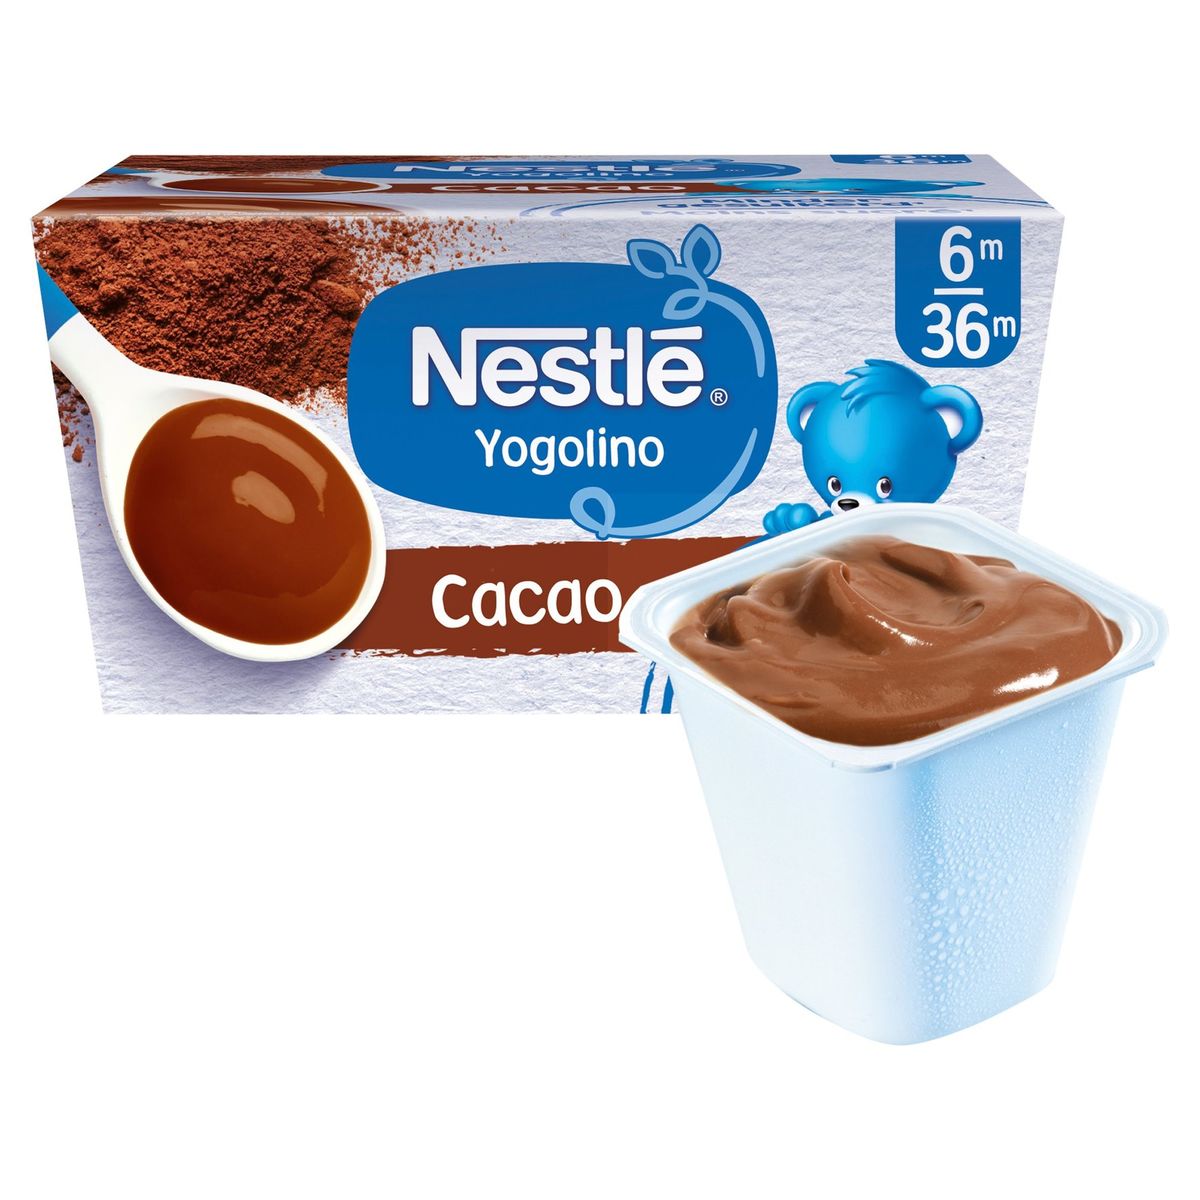 Nestlé Yogolino Laitage Cacao dès 6 mois 4x100g